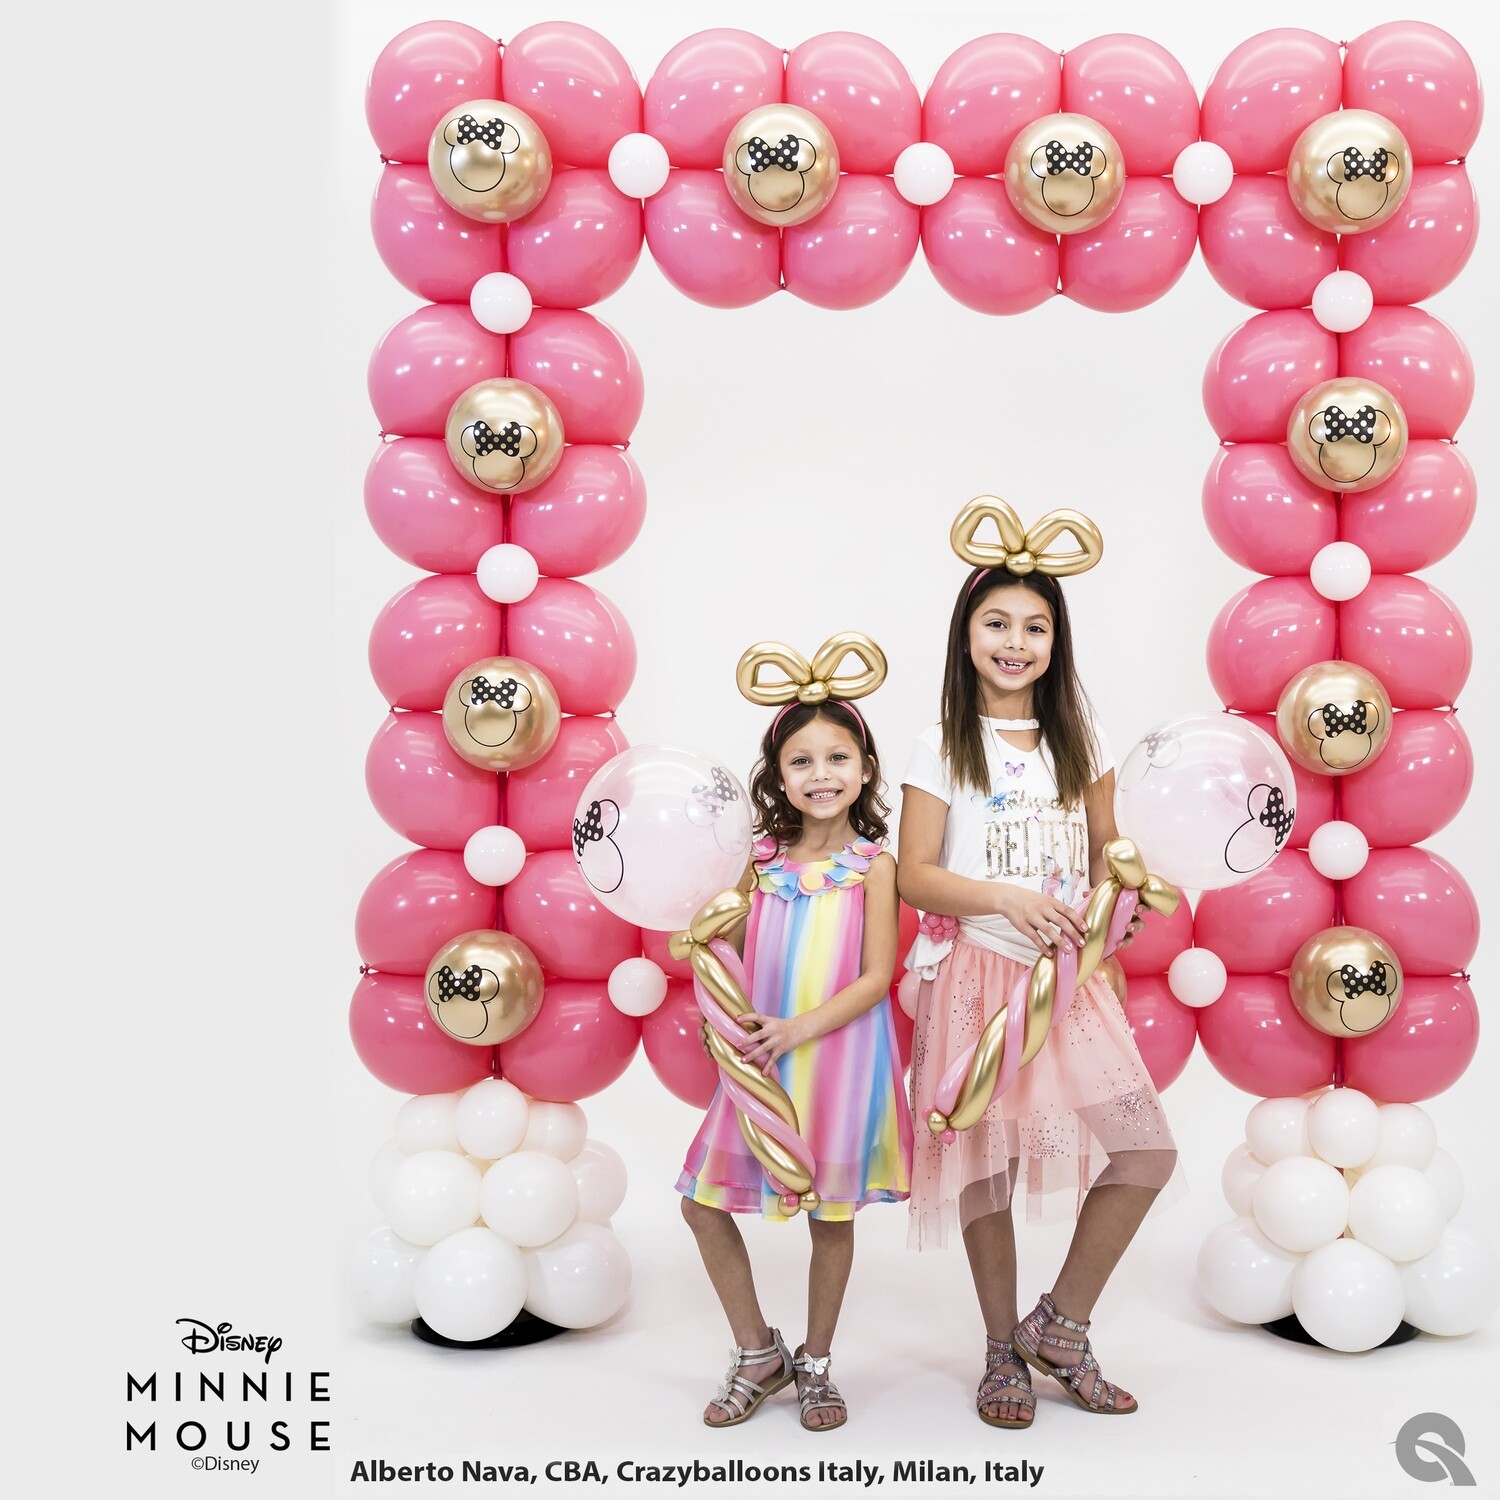 Giant balloon Photo Frame, Minnie Mouse balloon theme